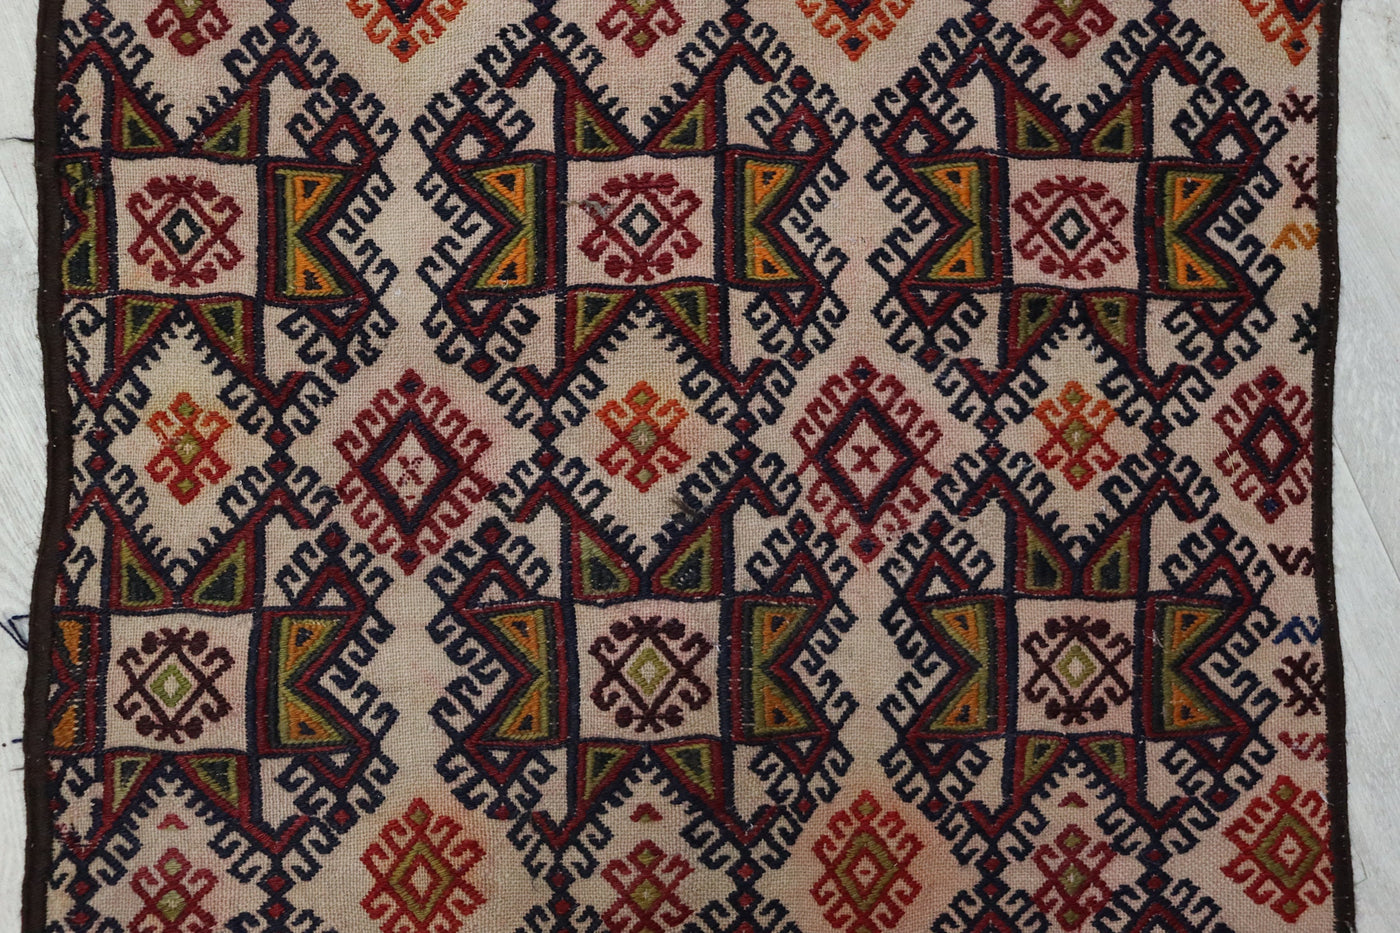 220x70 cm Antik orient handgewebte Teppich Nomaden Balouch sumakh kelim afghan Beloch Flur Läufer kilim Nr-579 Teppiche Orientsbazar   